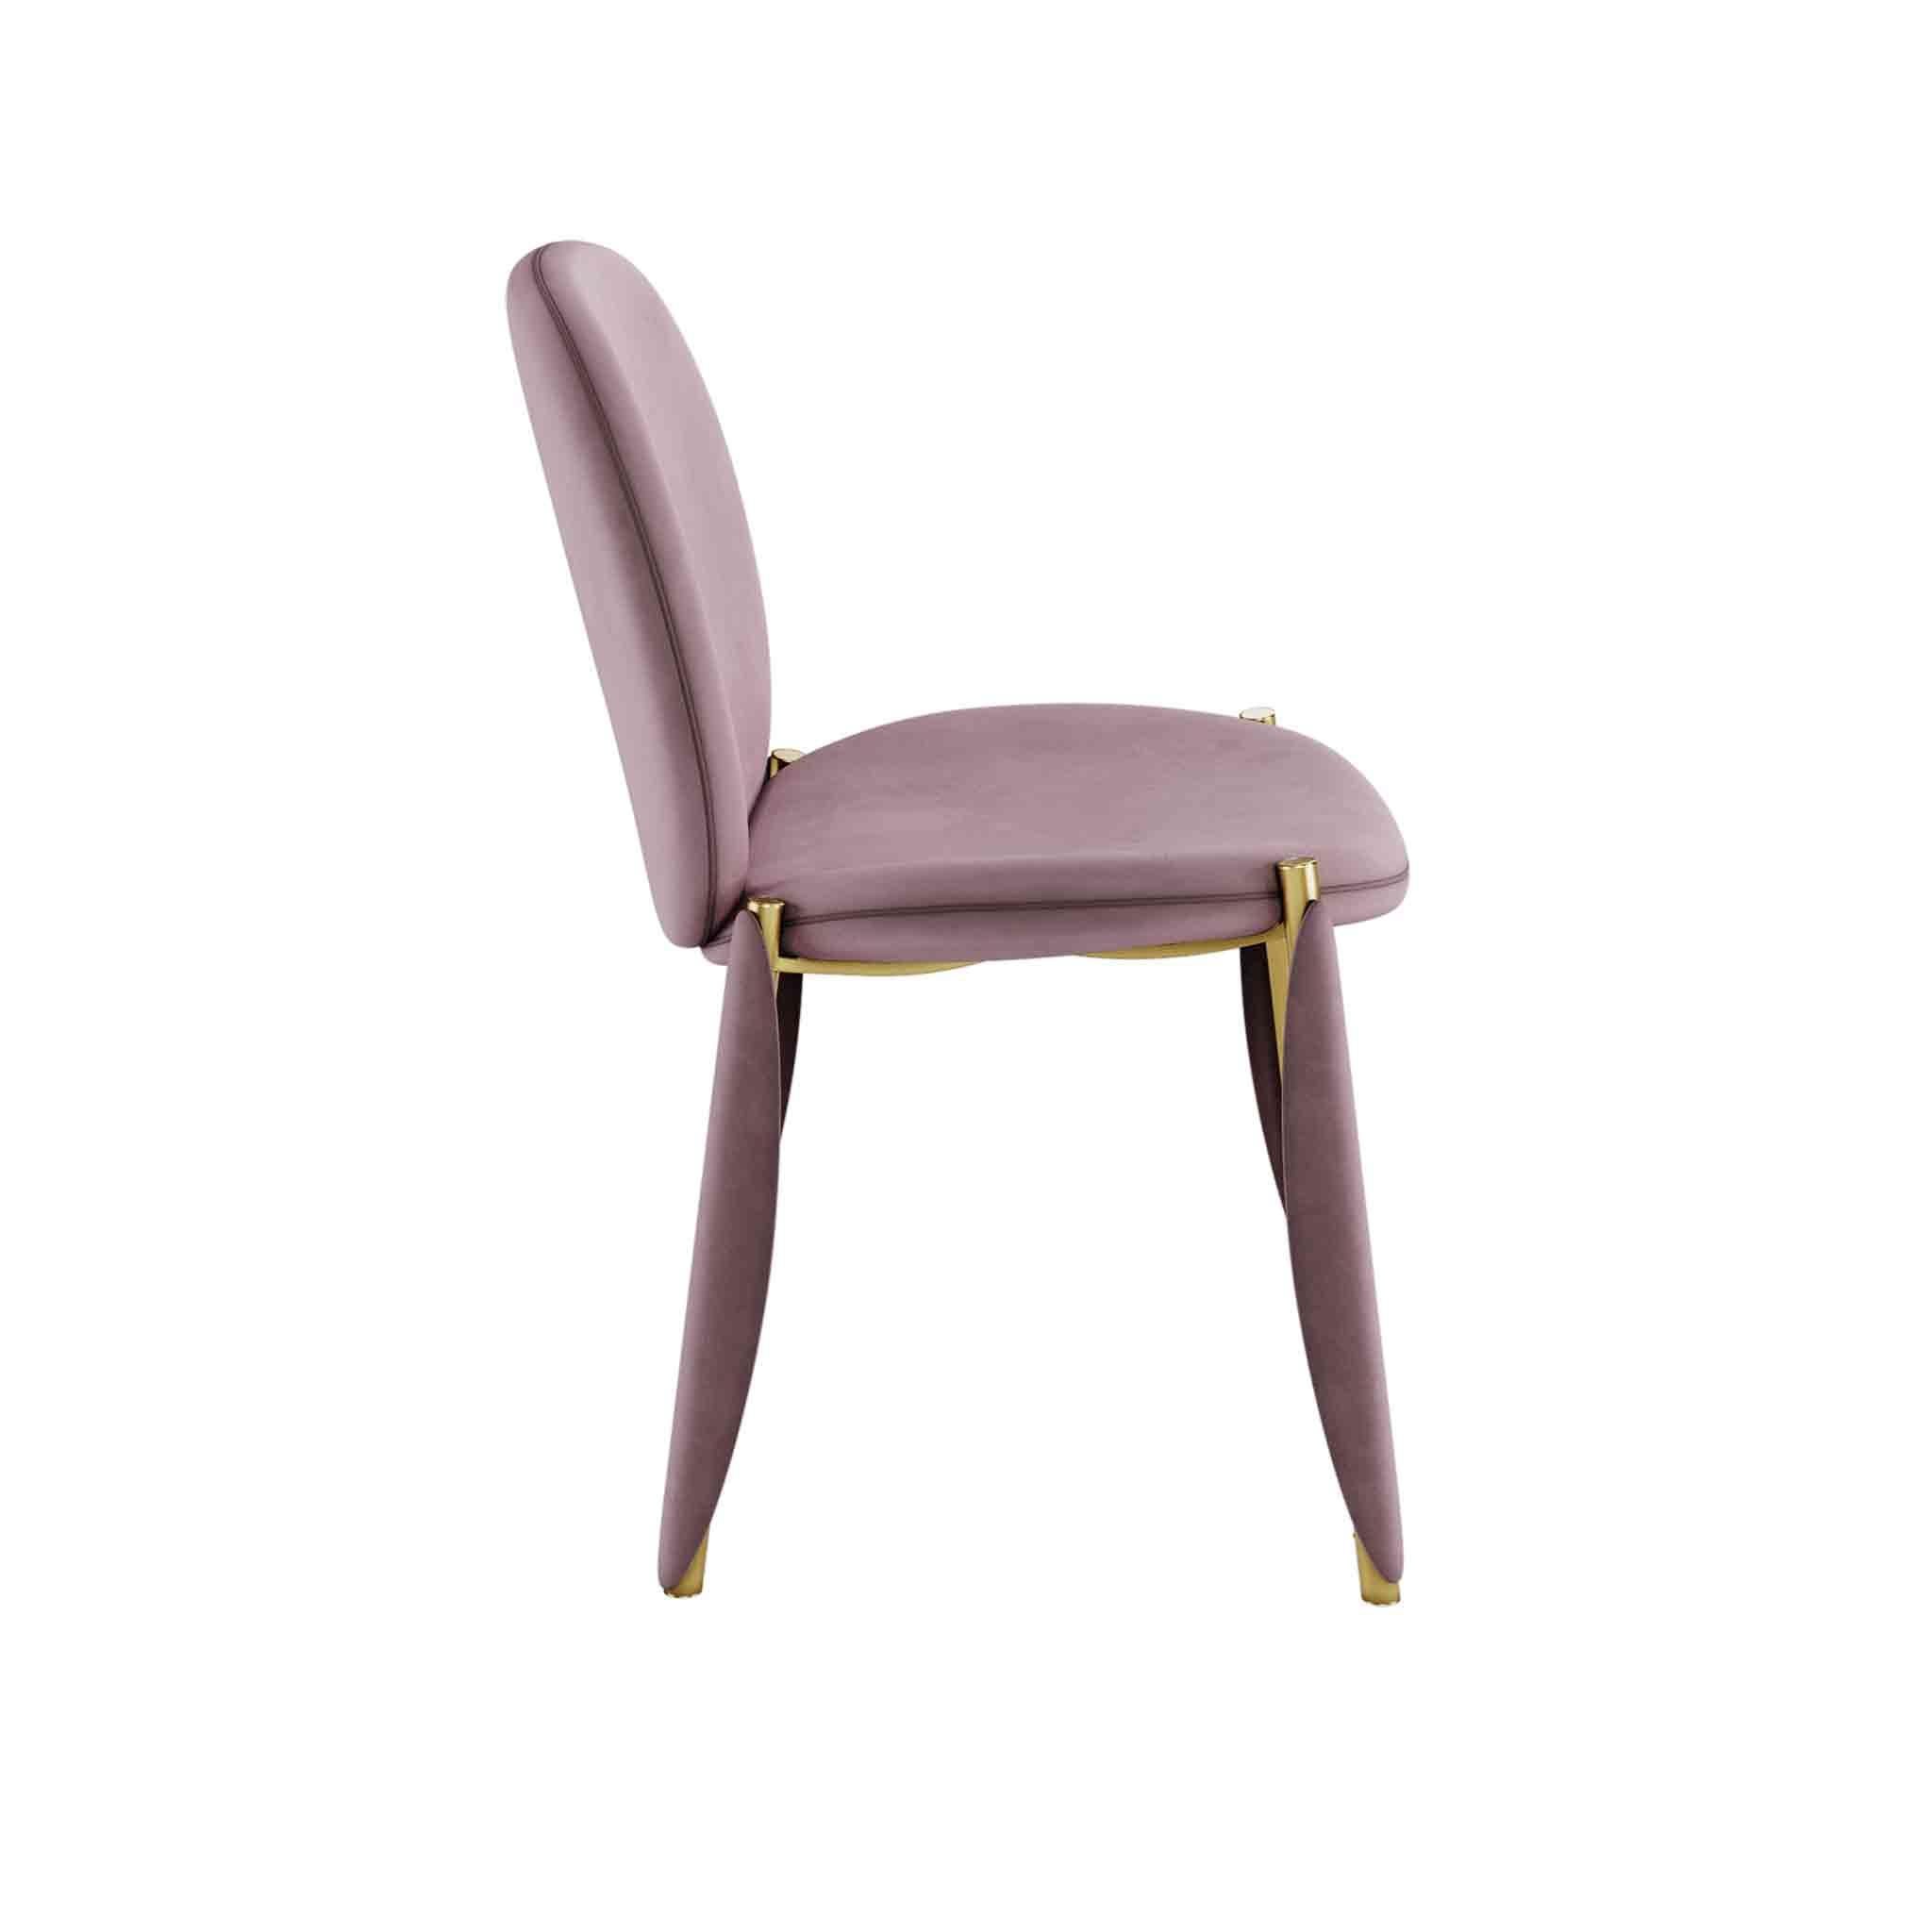 La chaise Mantis est une chaise de salle à manger luxueuse exprimée par une combinaison de matériaux uniques. Une chaise de salle à manger moderne est une option parfaite pour une salle à manger au design moderne ou classique.

MATERIAL : Tapis en